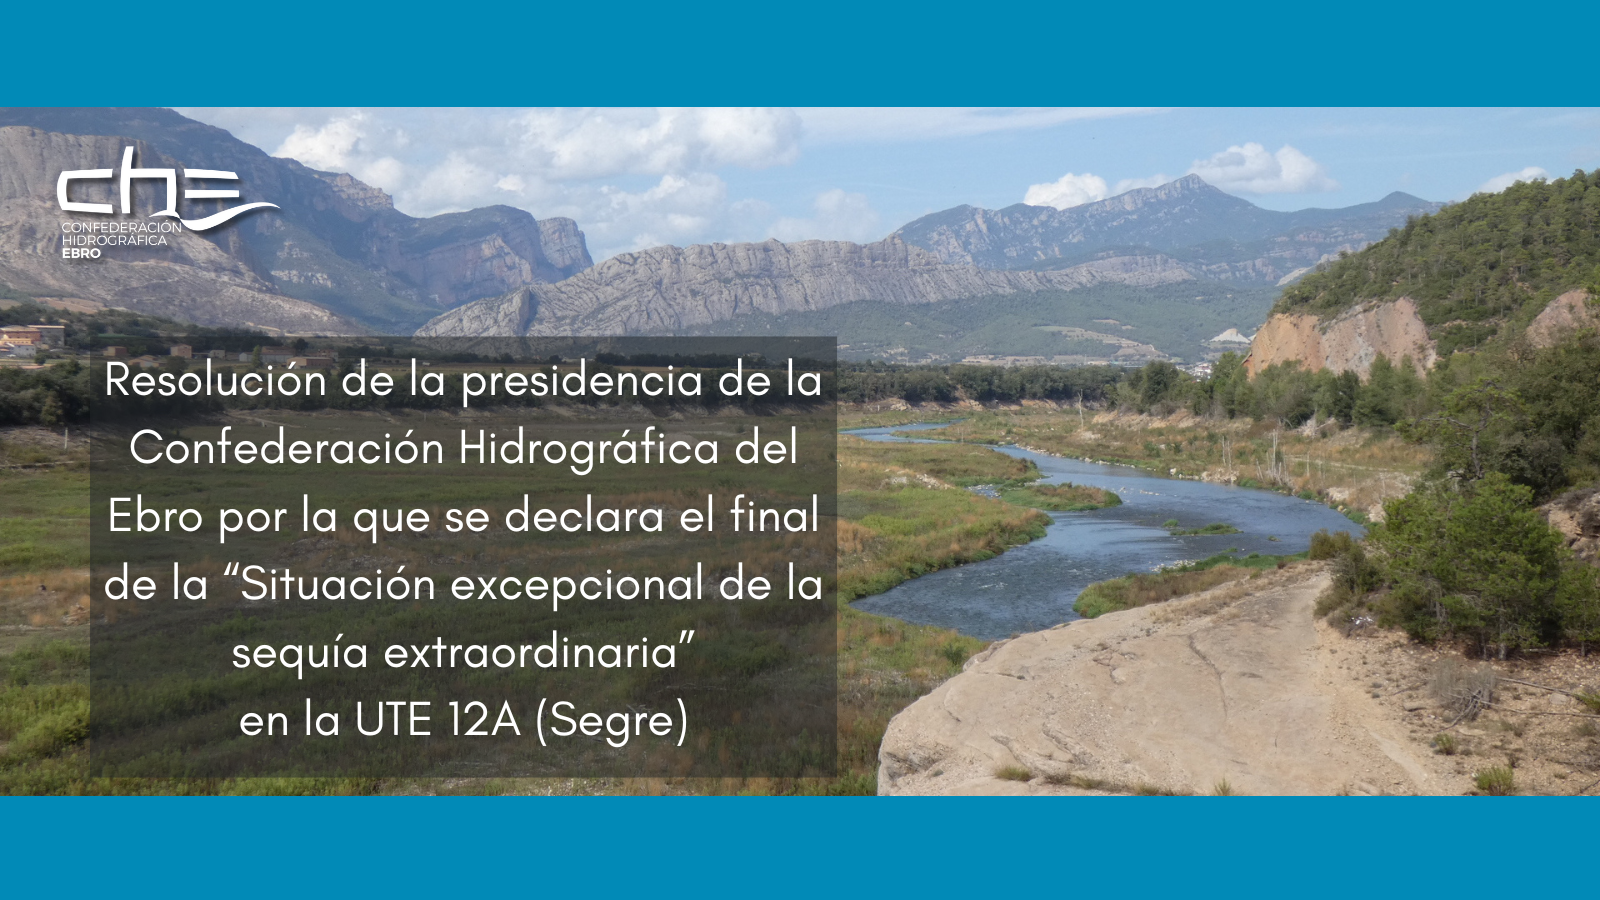 Imagen noticia - Resolución de la presidencia de la Confederación Hidrográfica del Ebro por la que se declara el final de la 